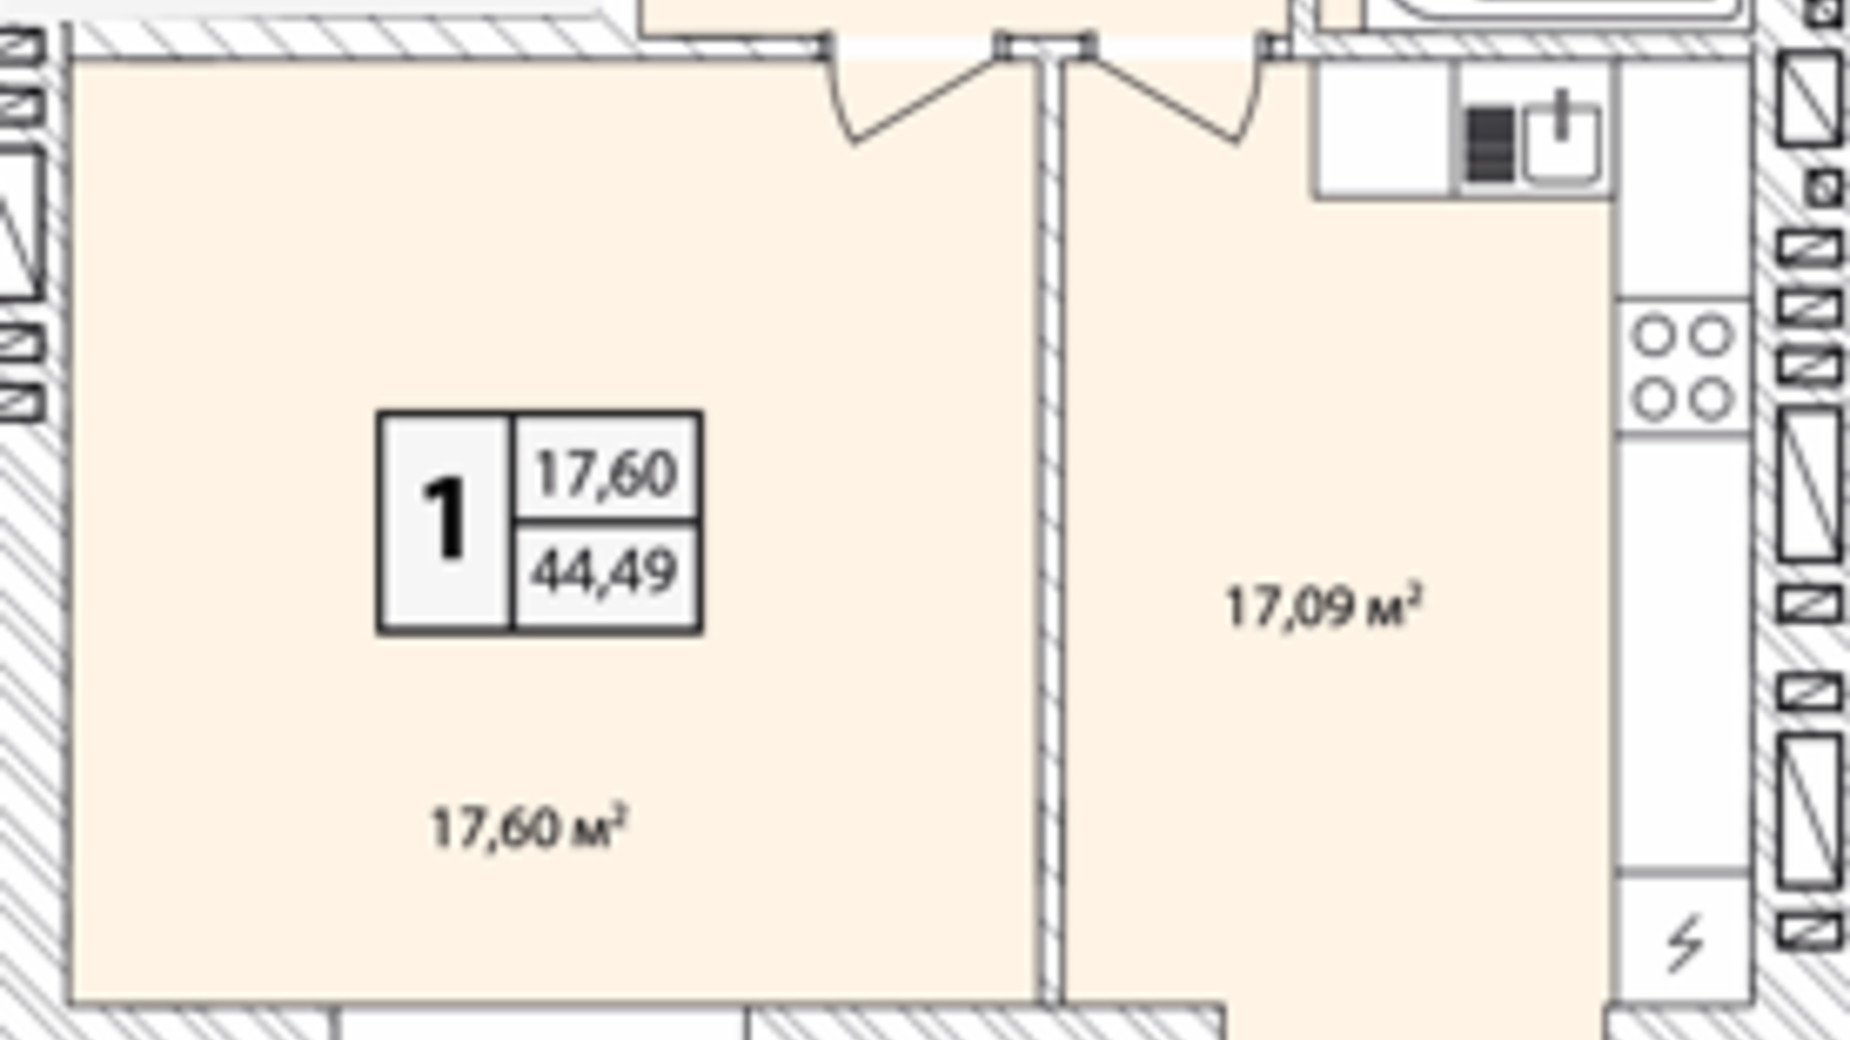 Планировка 1-комнатной квартиры в ЖК Прага Gold 44.49 м², фото 631217